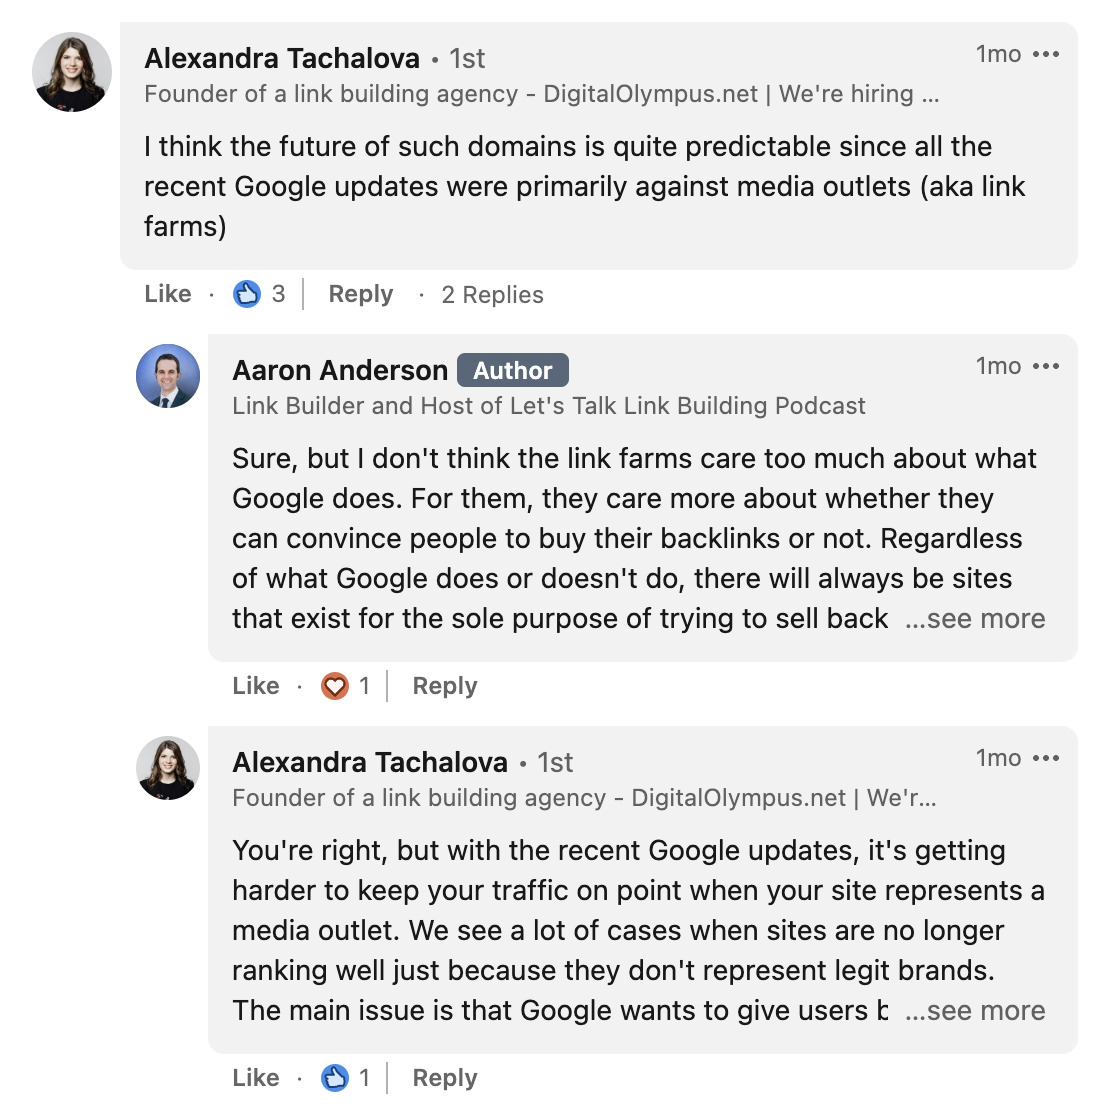 Interaktion mellan Alexandra Tachalova och Aaron Anderson i LinkedIn-kommentarer